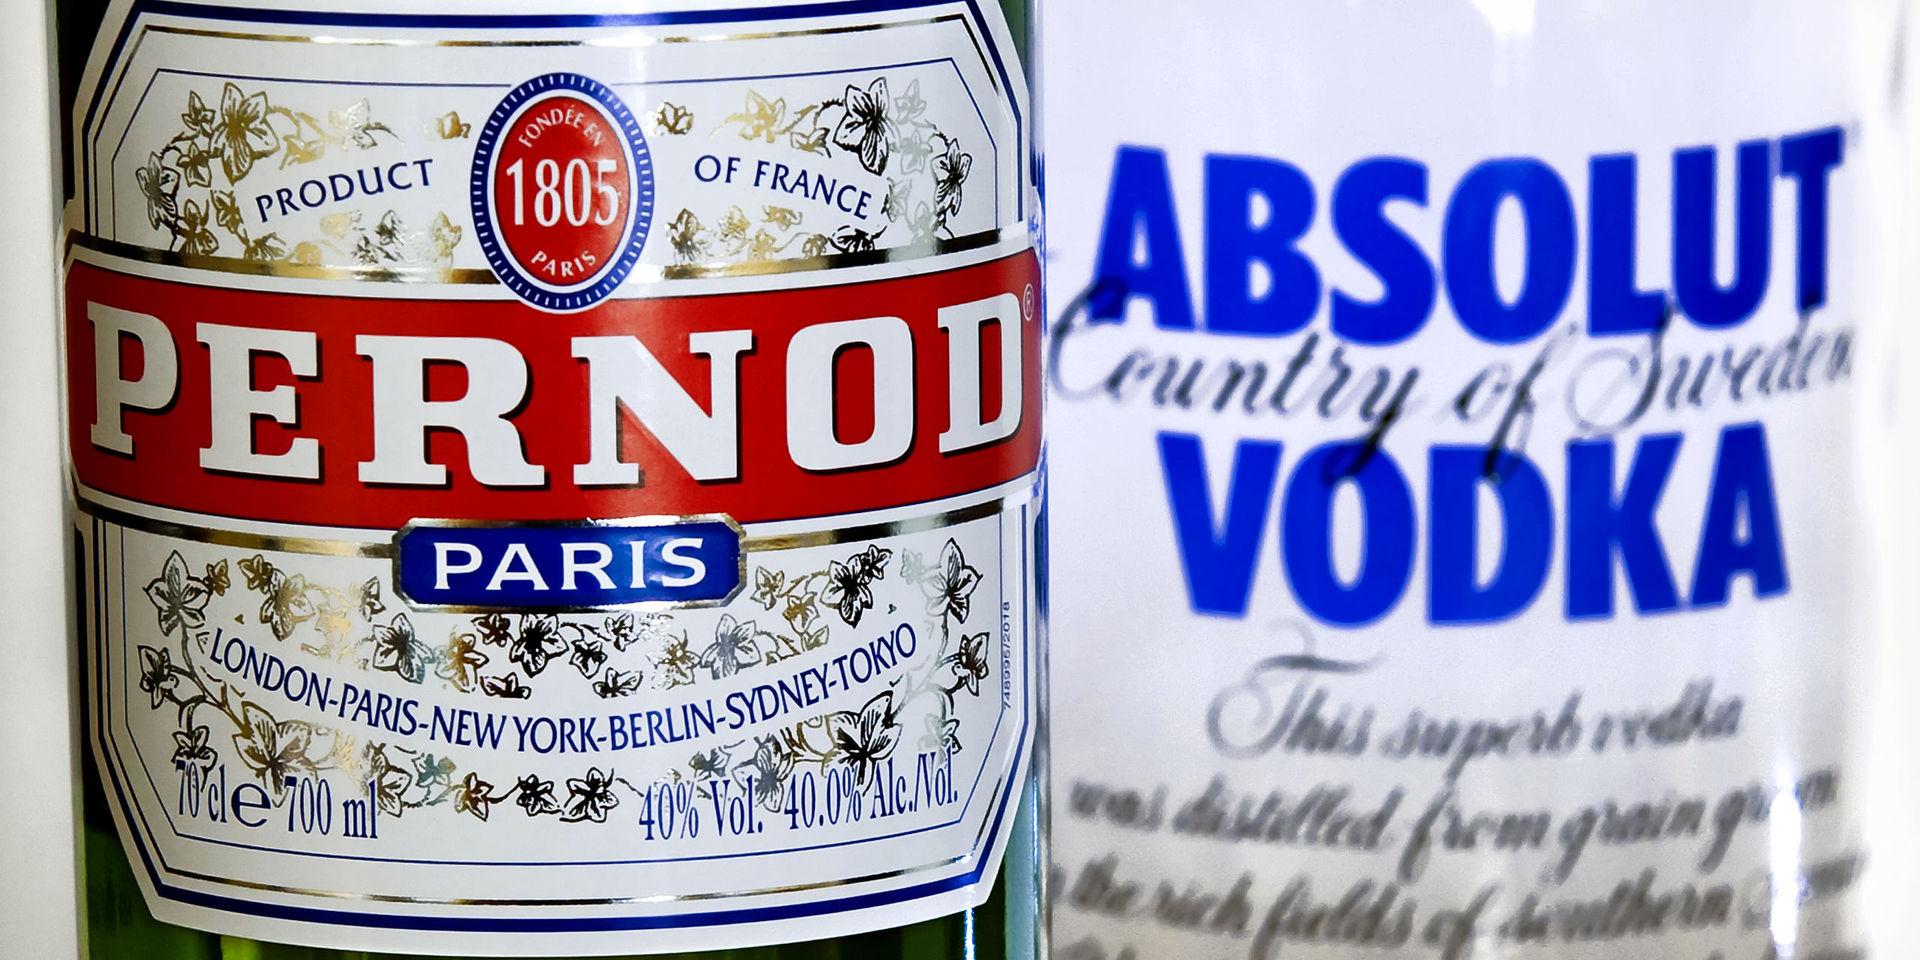 Coronaviruset slår hårt mot Kinaförsäljningen, varnar Absolut Vodka-ägaren Pernod Ricard. Arkivbild.